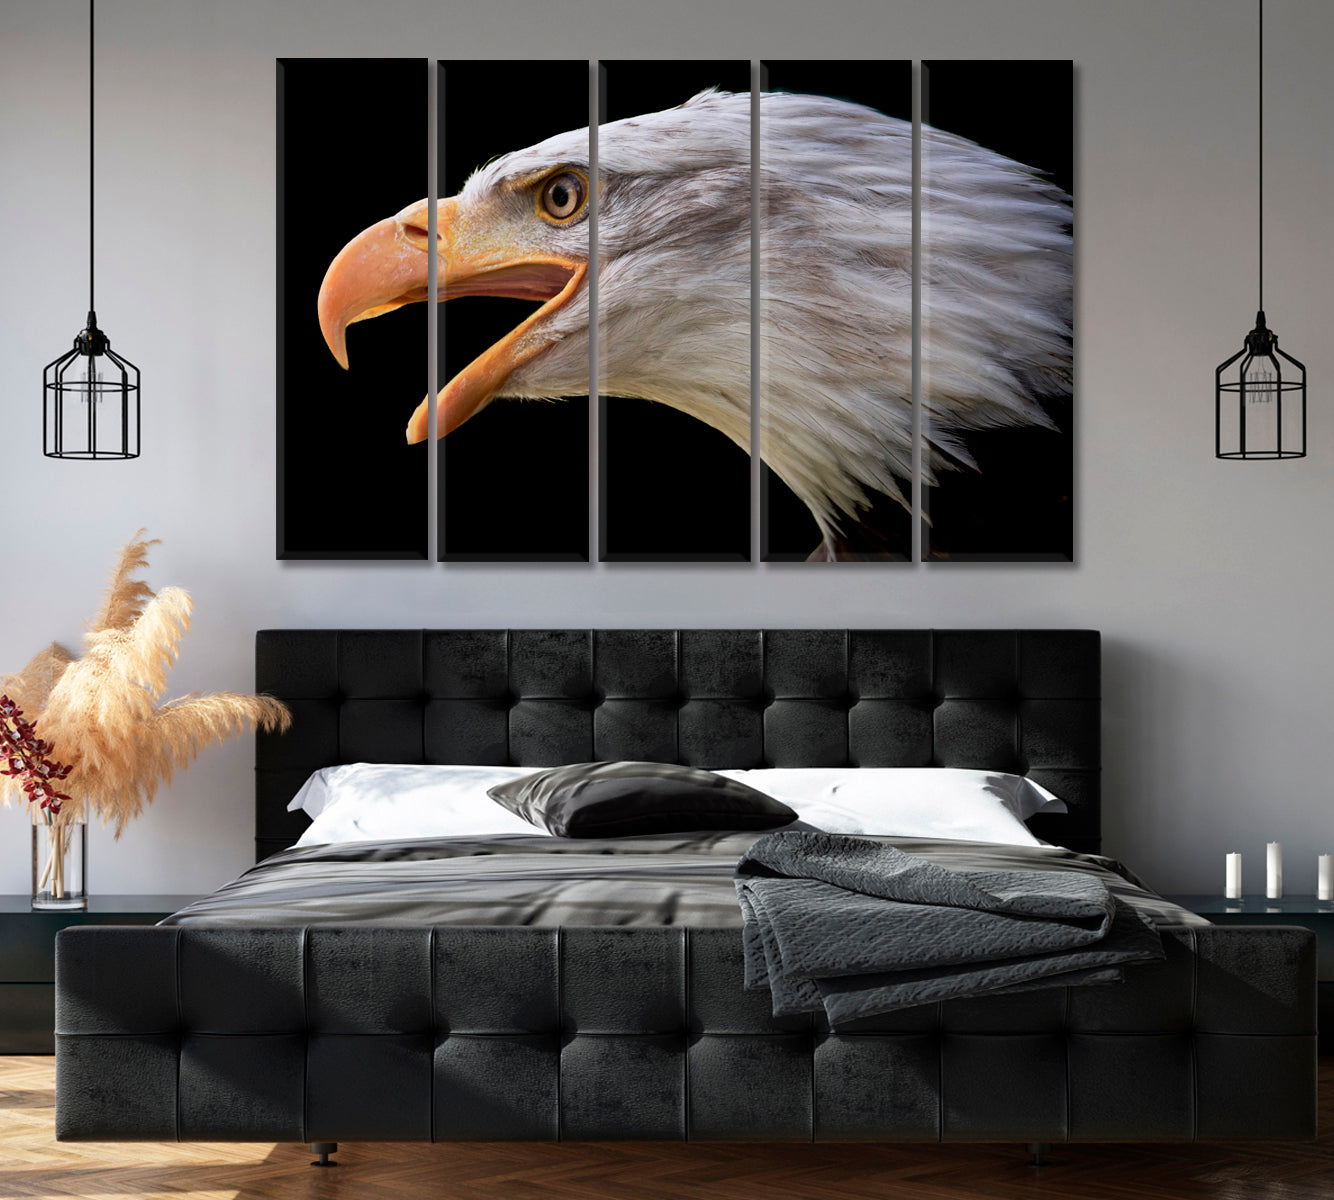 Portrait of Bald Eagle Canvas Print-Canvas Print-CetArt-1 Panel-24x16 inches-CetArt